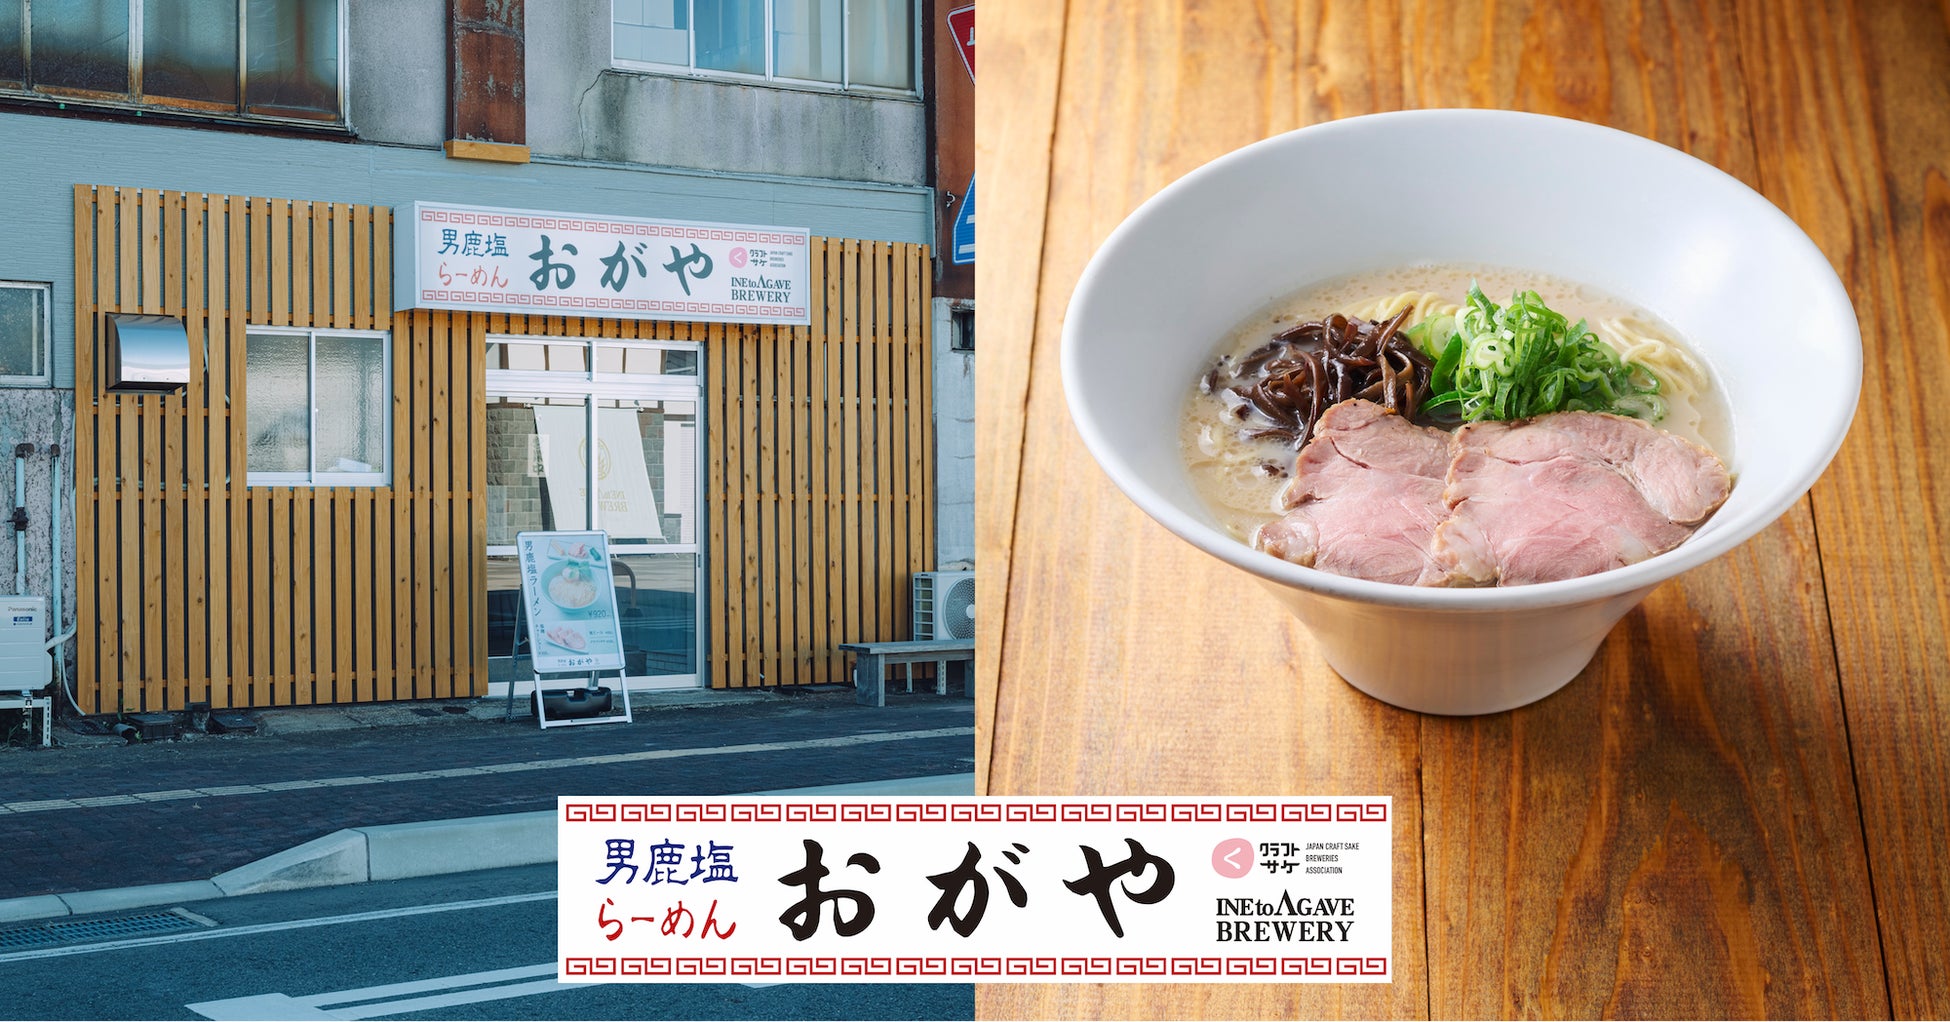 秋田県男鹿市の稲とアガベのラーメン店「おがや」にてリニューアルした一風堂のラーメン「白丸元味」を提供「おがやで一風堂in男鹿」を開始します